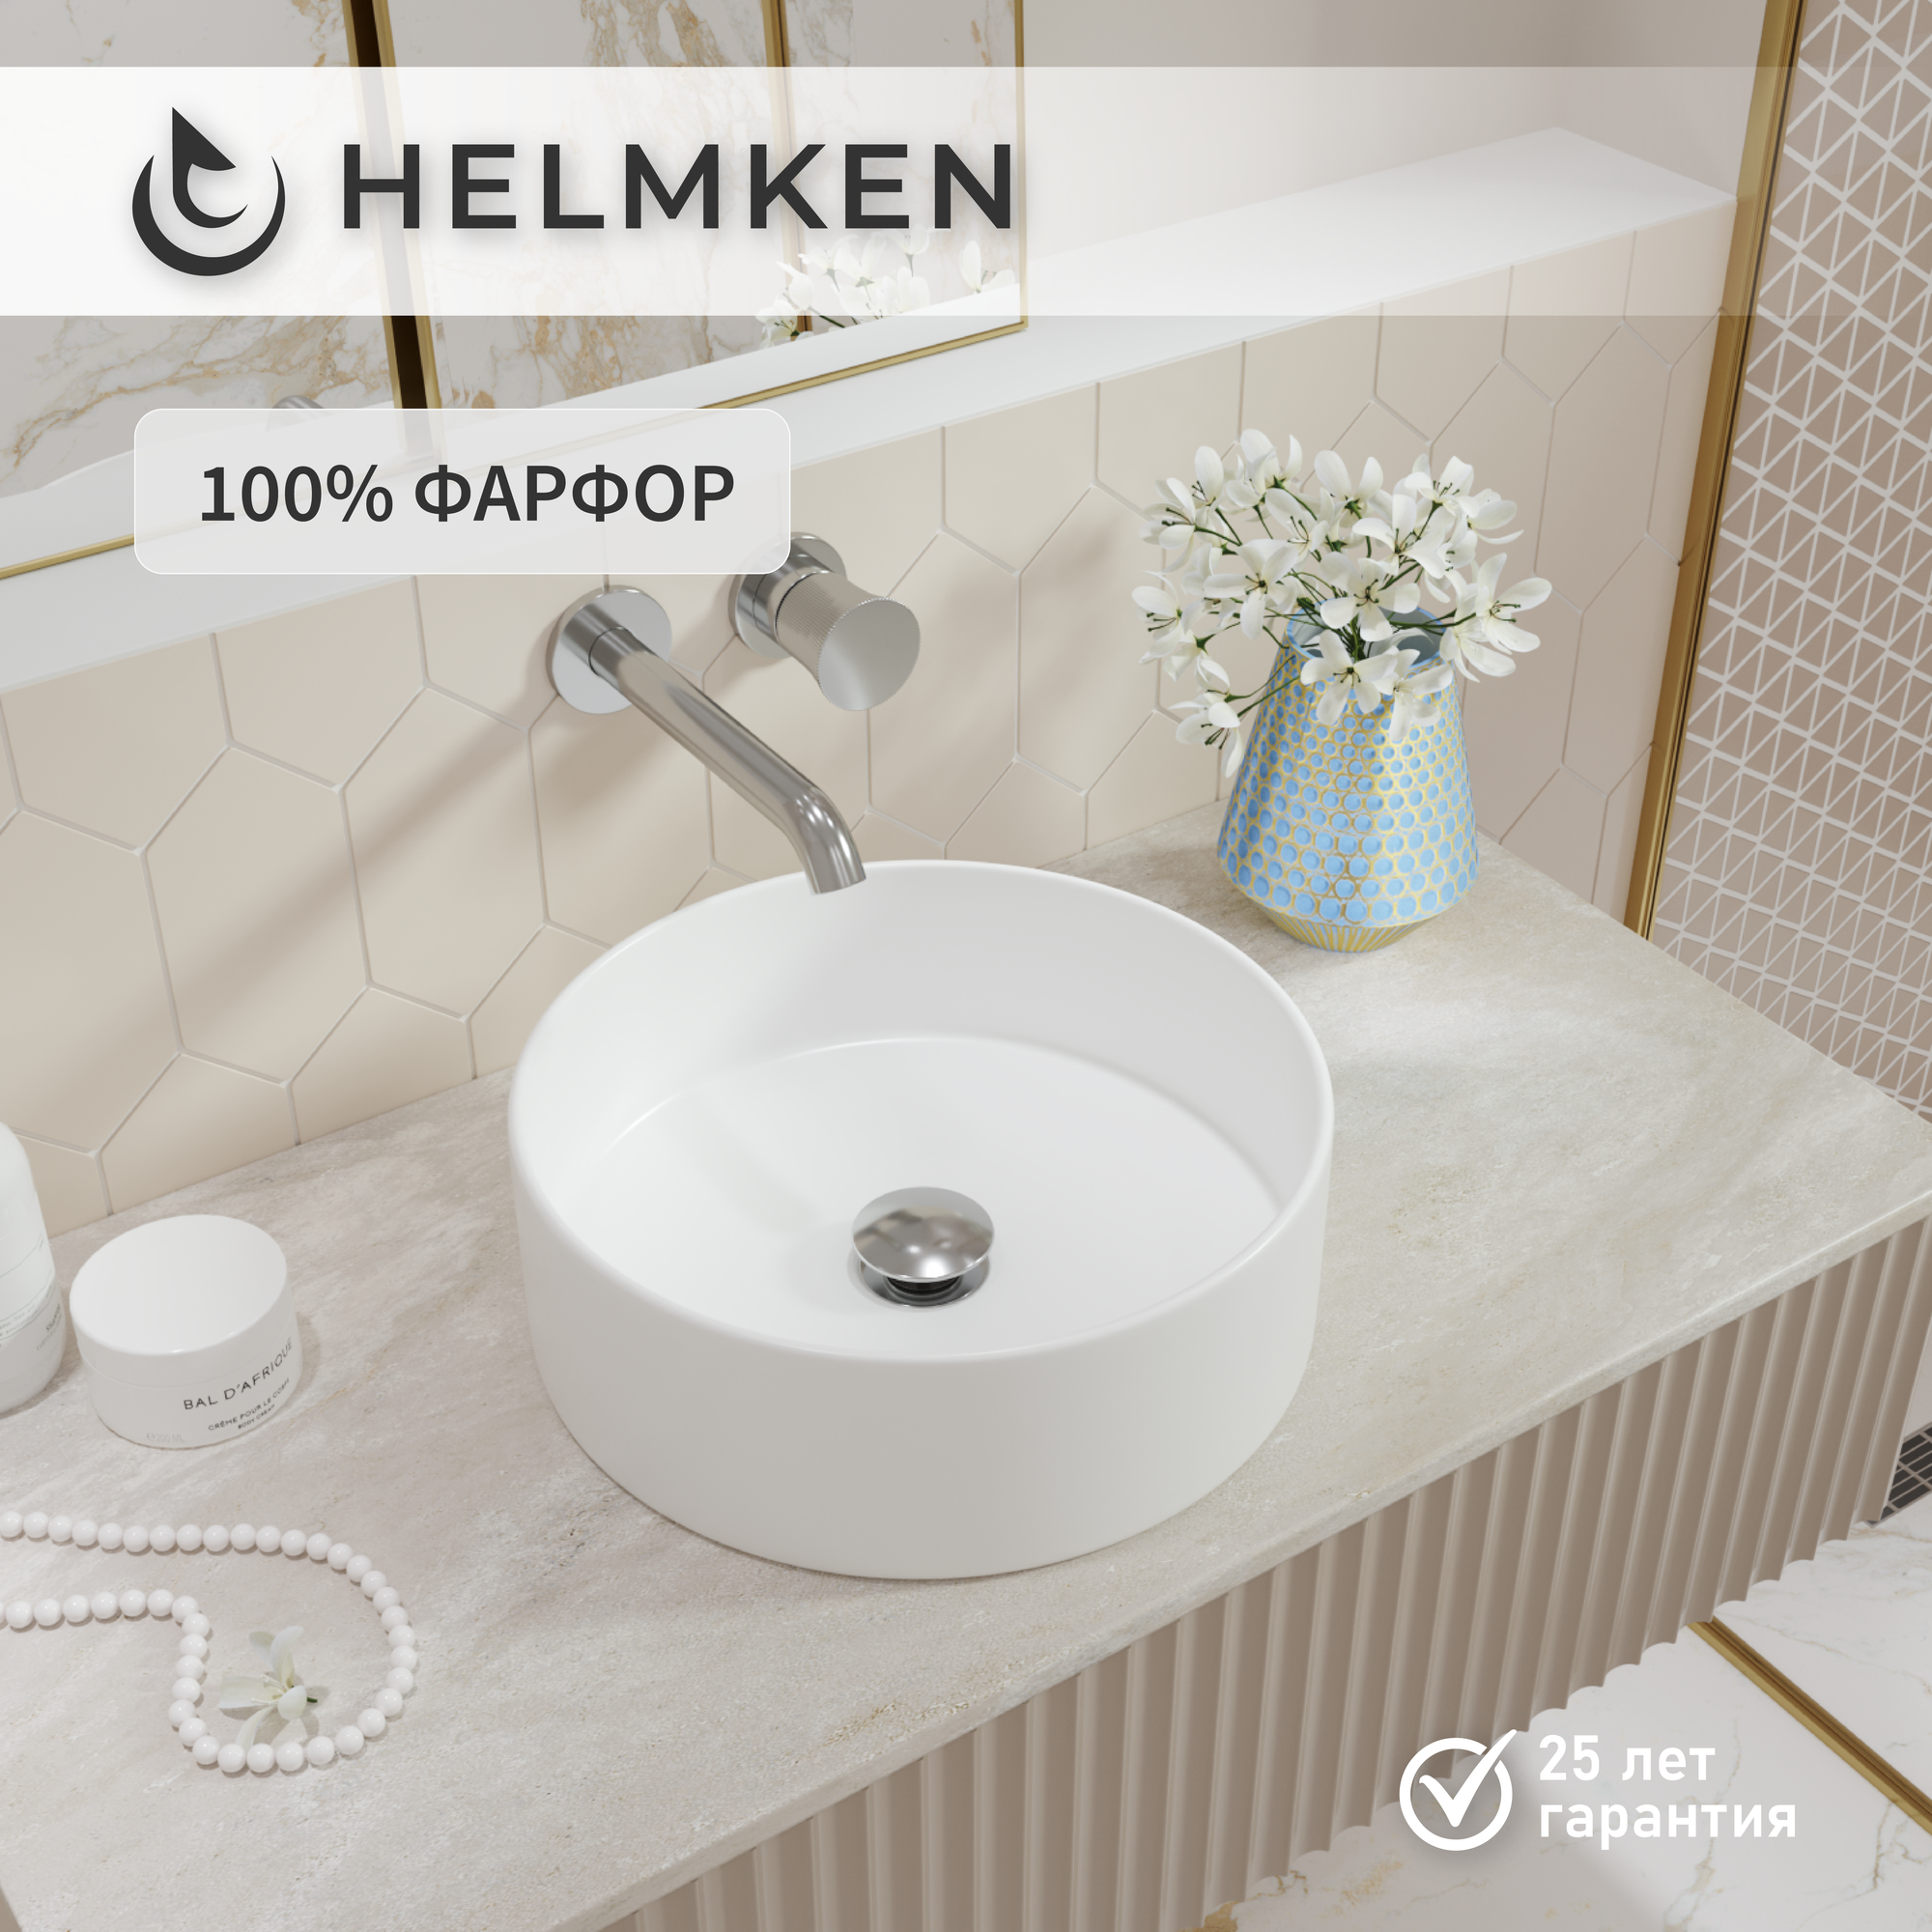 Накладная раковина в ванную Helmken 30136000: умывальник круглый из фарфора 36 см, белый цвет, гарантия 25 лет